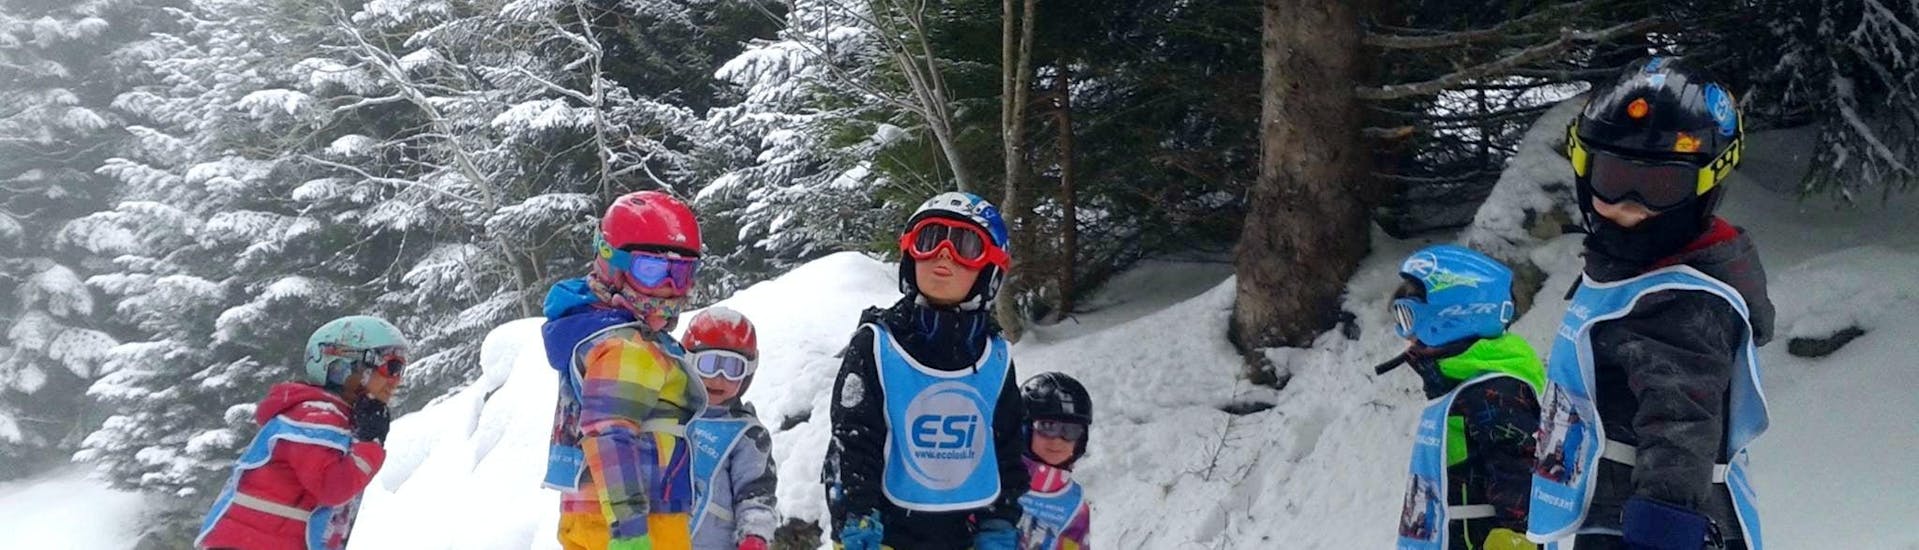 Des enfants se tiennent au milieu de la piste entourés d'arbres pendant leur Cours de ski pour Enfants (3-11 ans) - Vacances - Matin avec l'école de ski ESI Ecoloski Barèges.